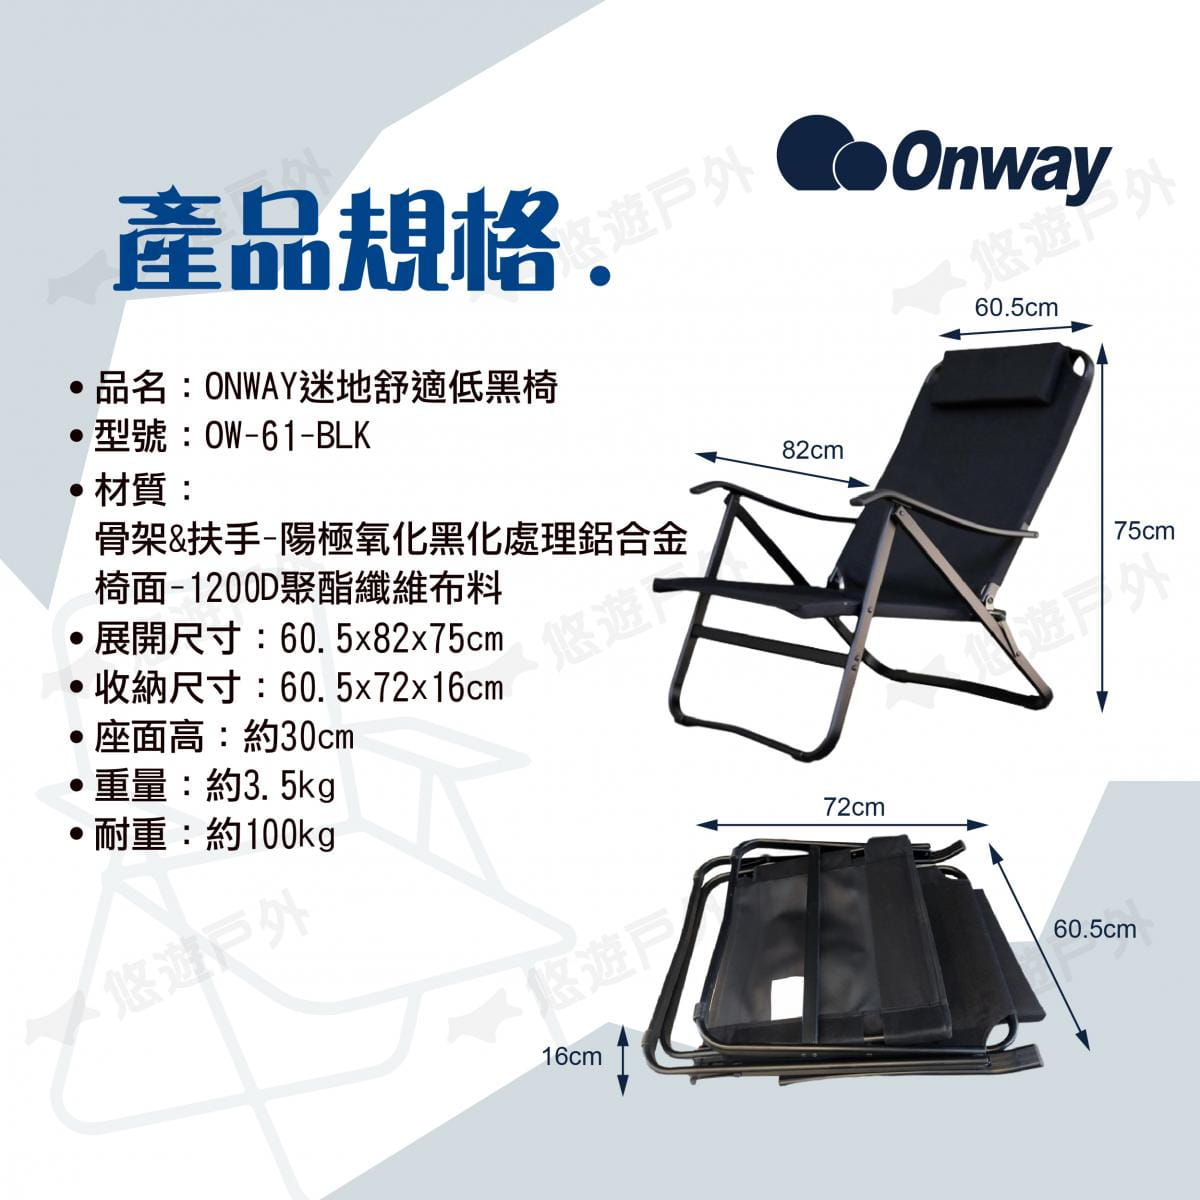 【ONWAY】迷地舒適低黑椅 OW-61-BLK (悠遊戶外) 7